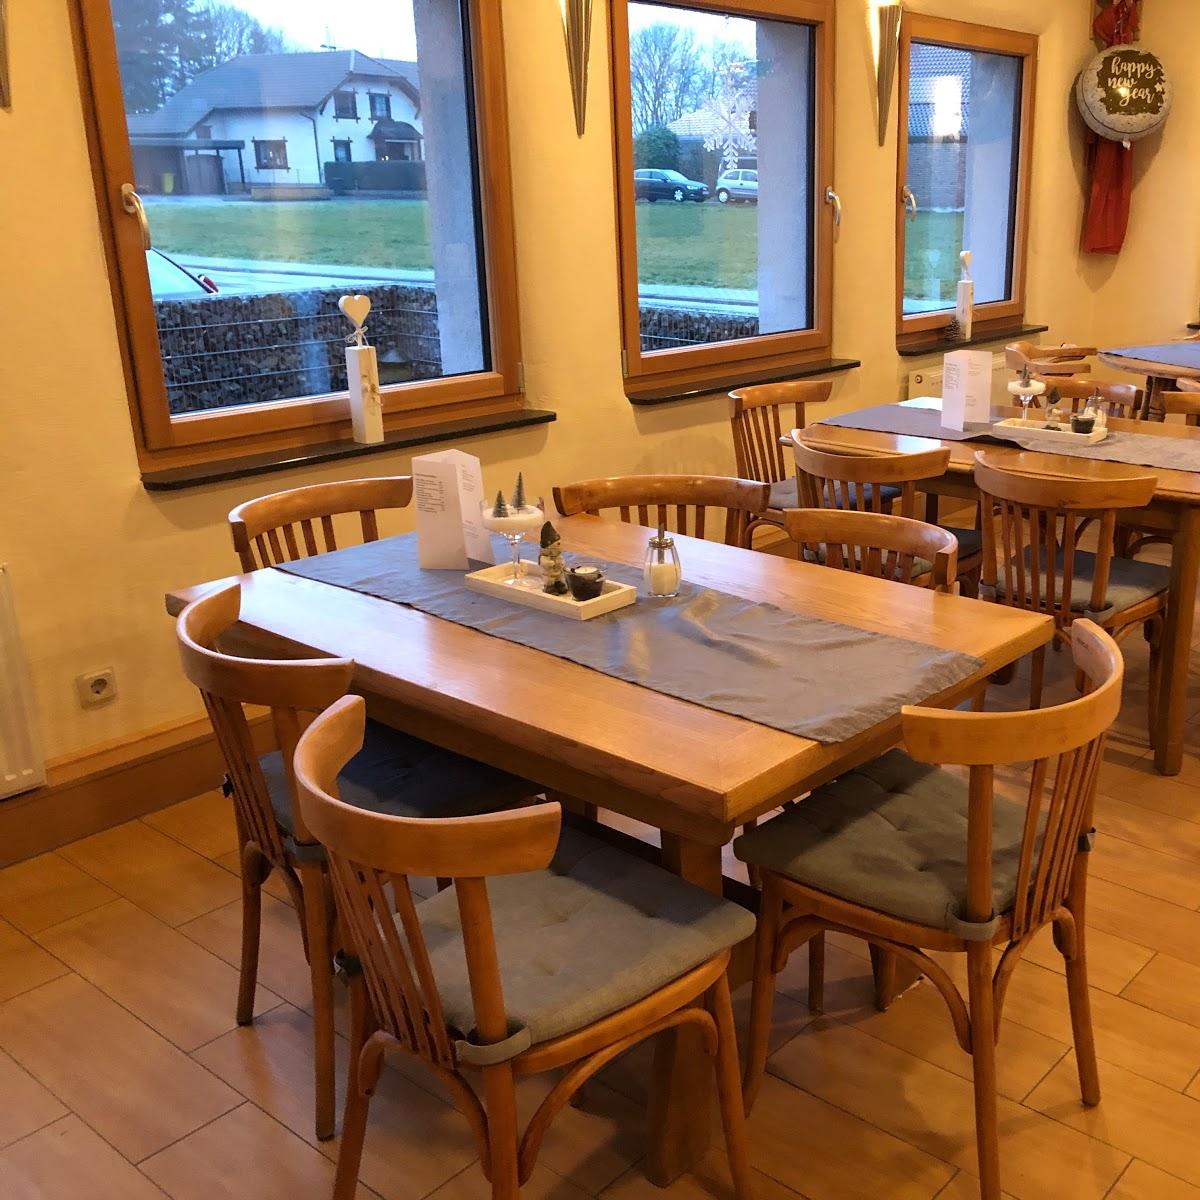 Restaurant "Cafe zur Schönen Aussicht Rursee" in Nideggen